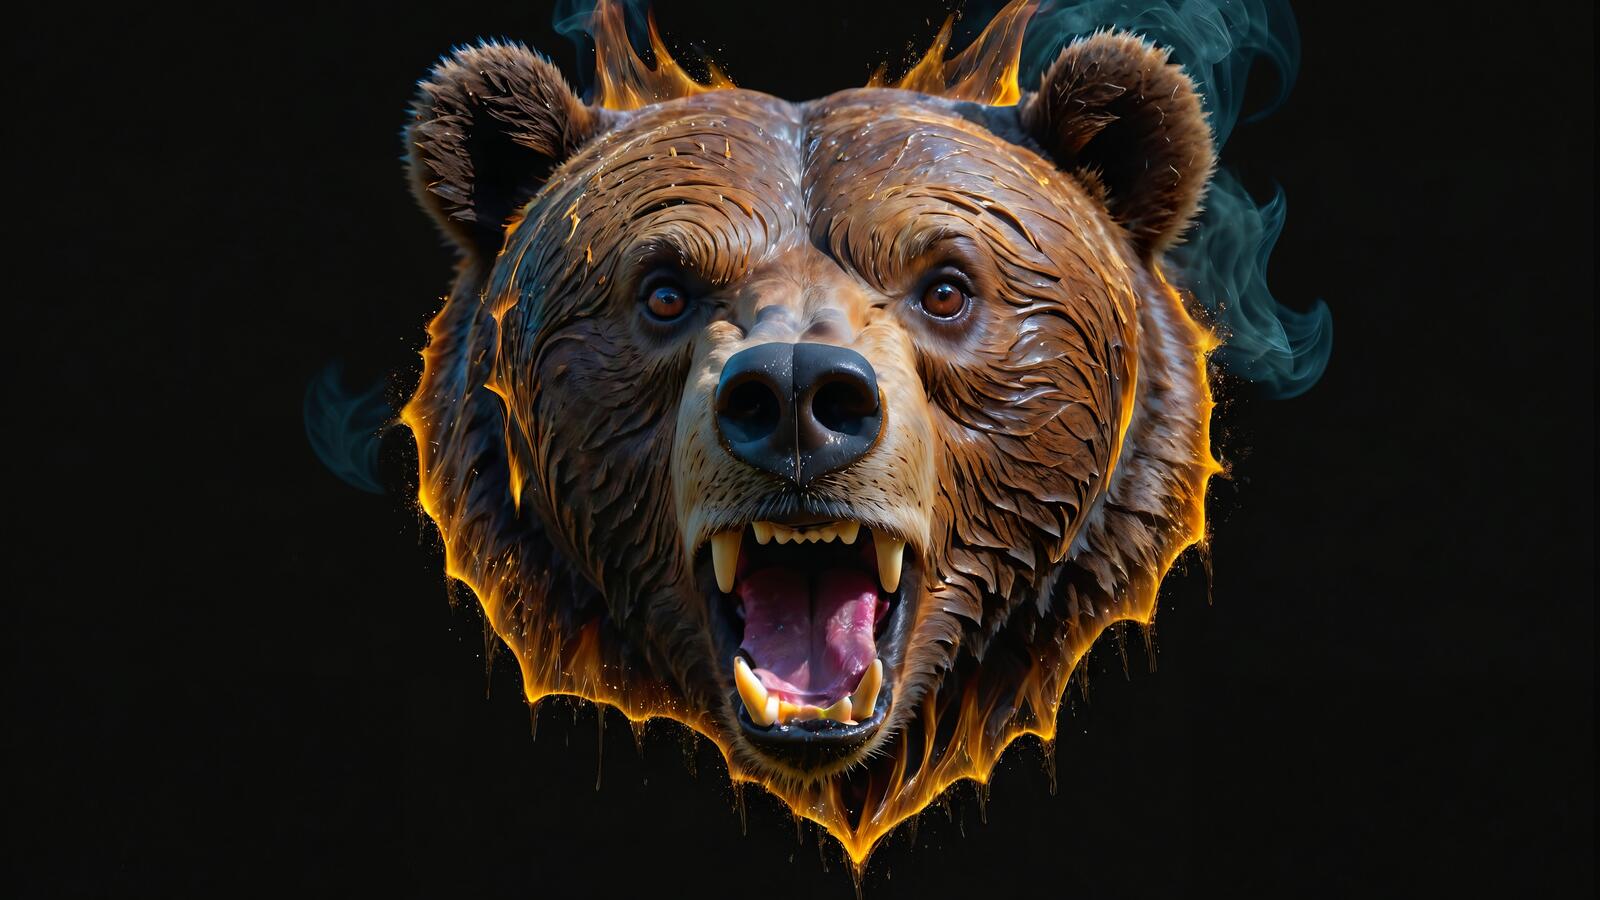 Бесплатное фото Горящая голова бурого медведя